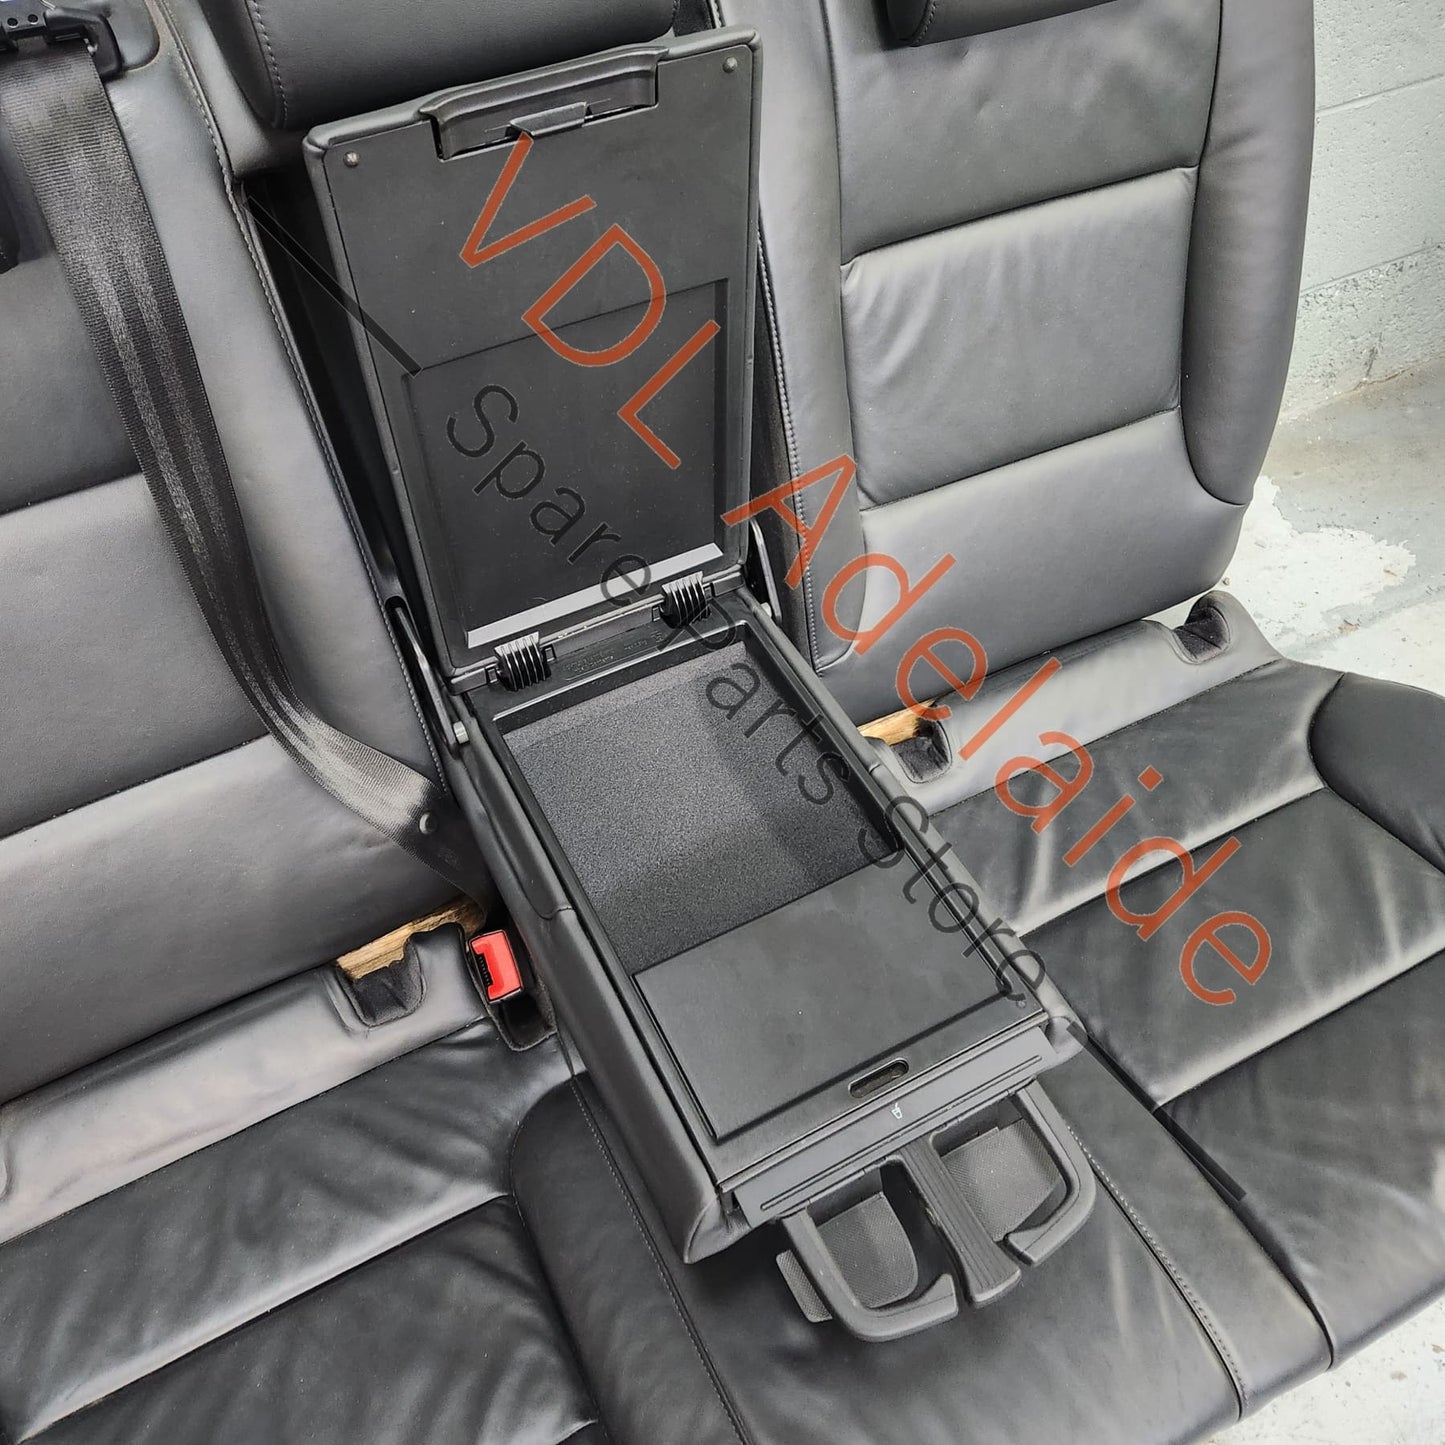 8P0881533 8P0881534 Audi S3 8P RS3 Golf R MK6 Wingback Fine Nappa Leather Seats Euro Recaro